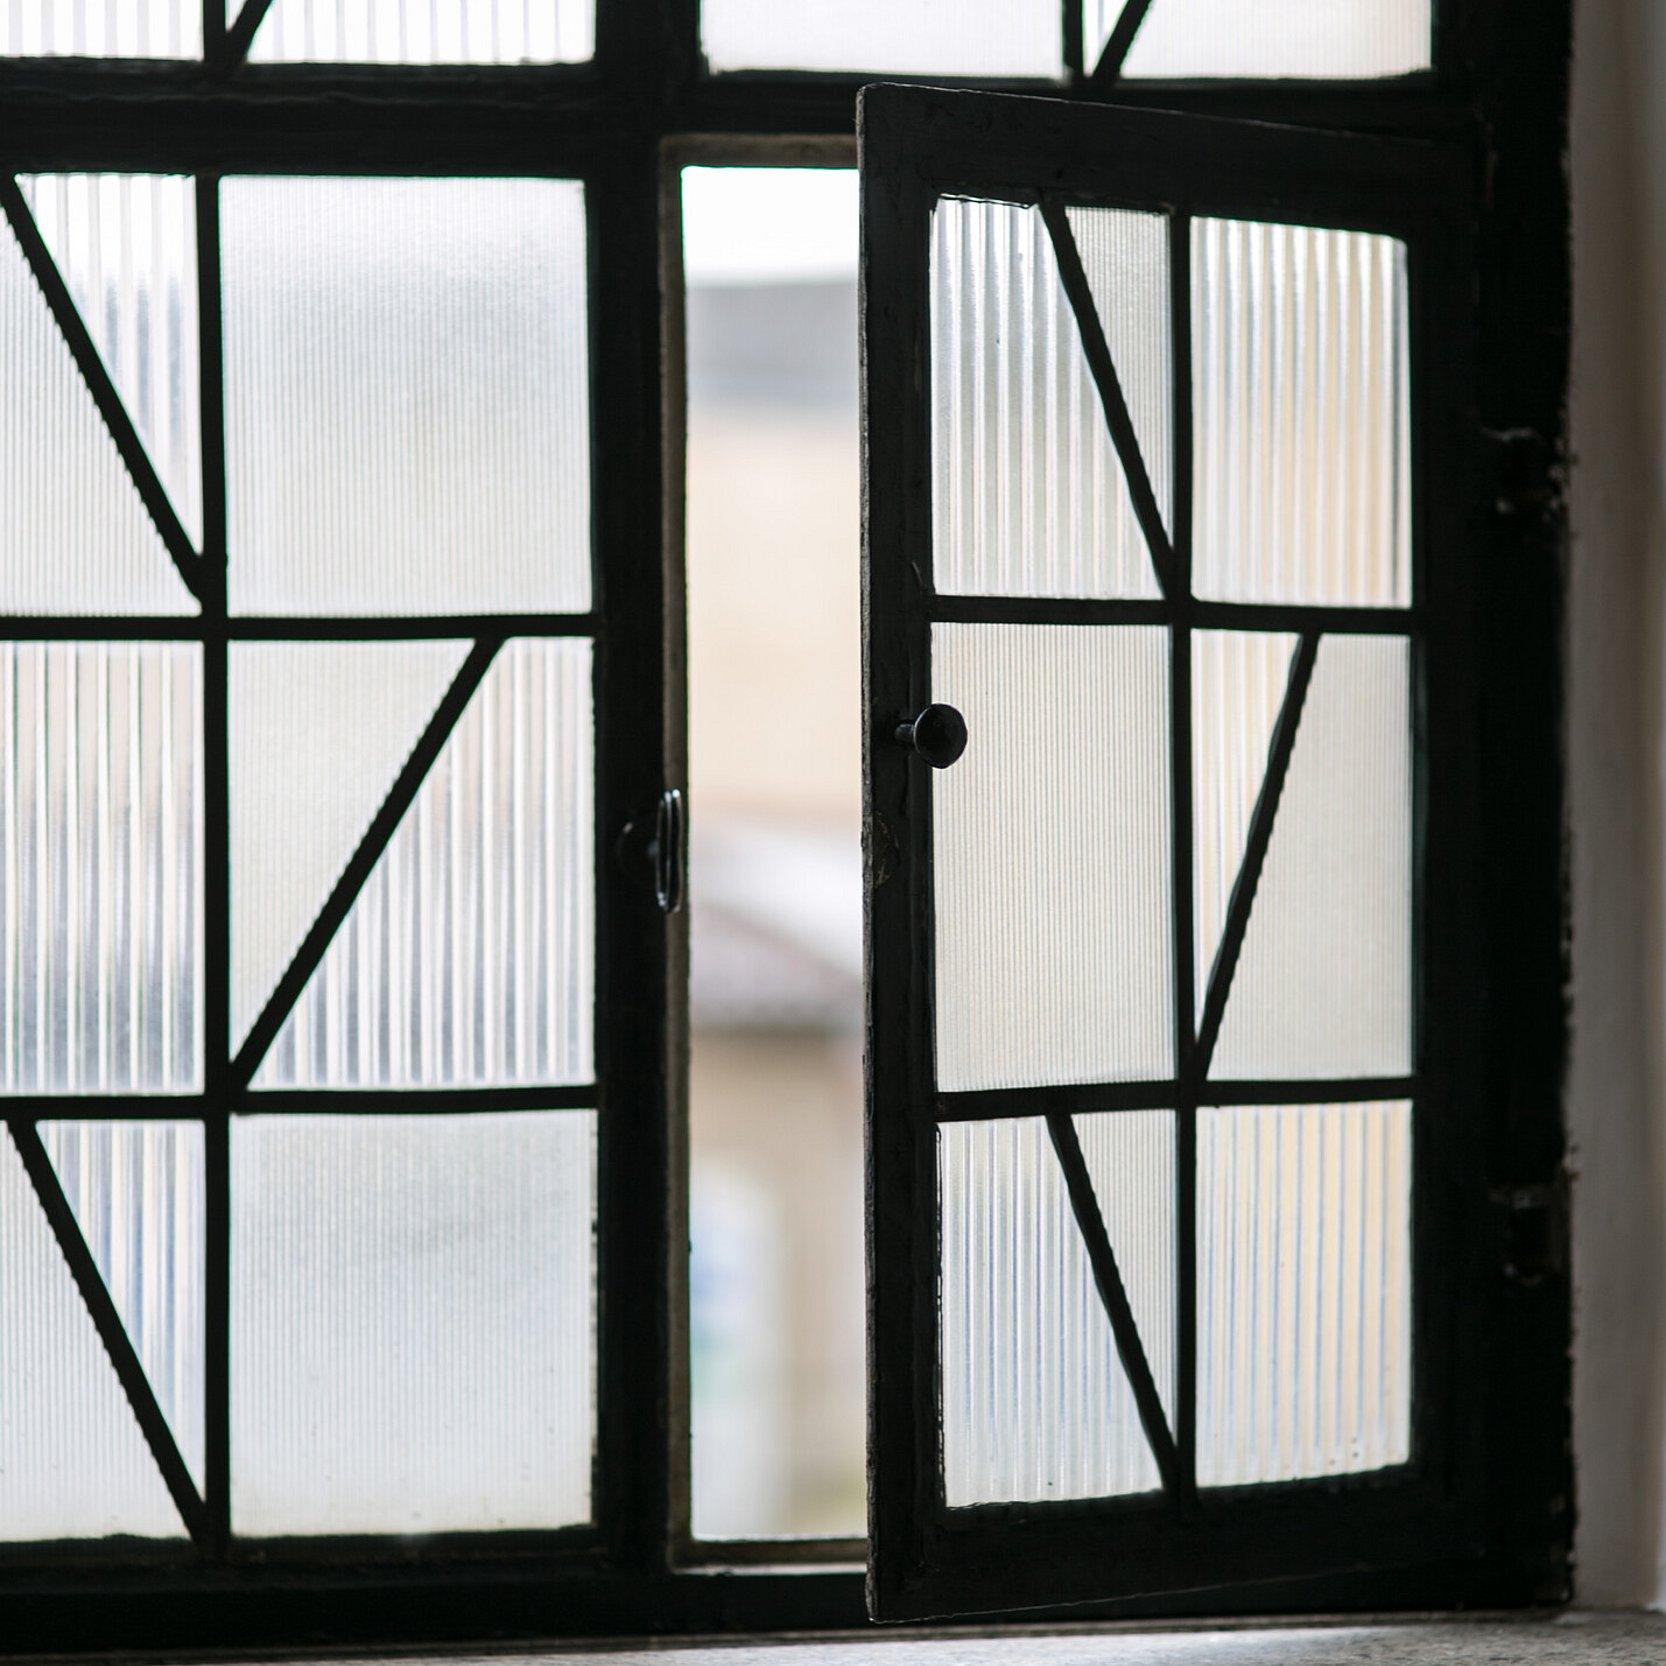 Fenserfront aus Reliefglas. Ein Teilfenster davon ist geöffnet